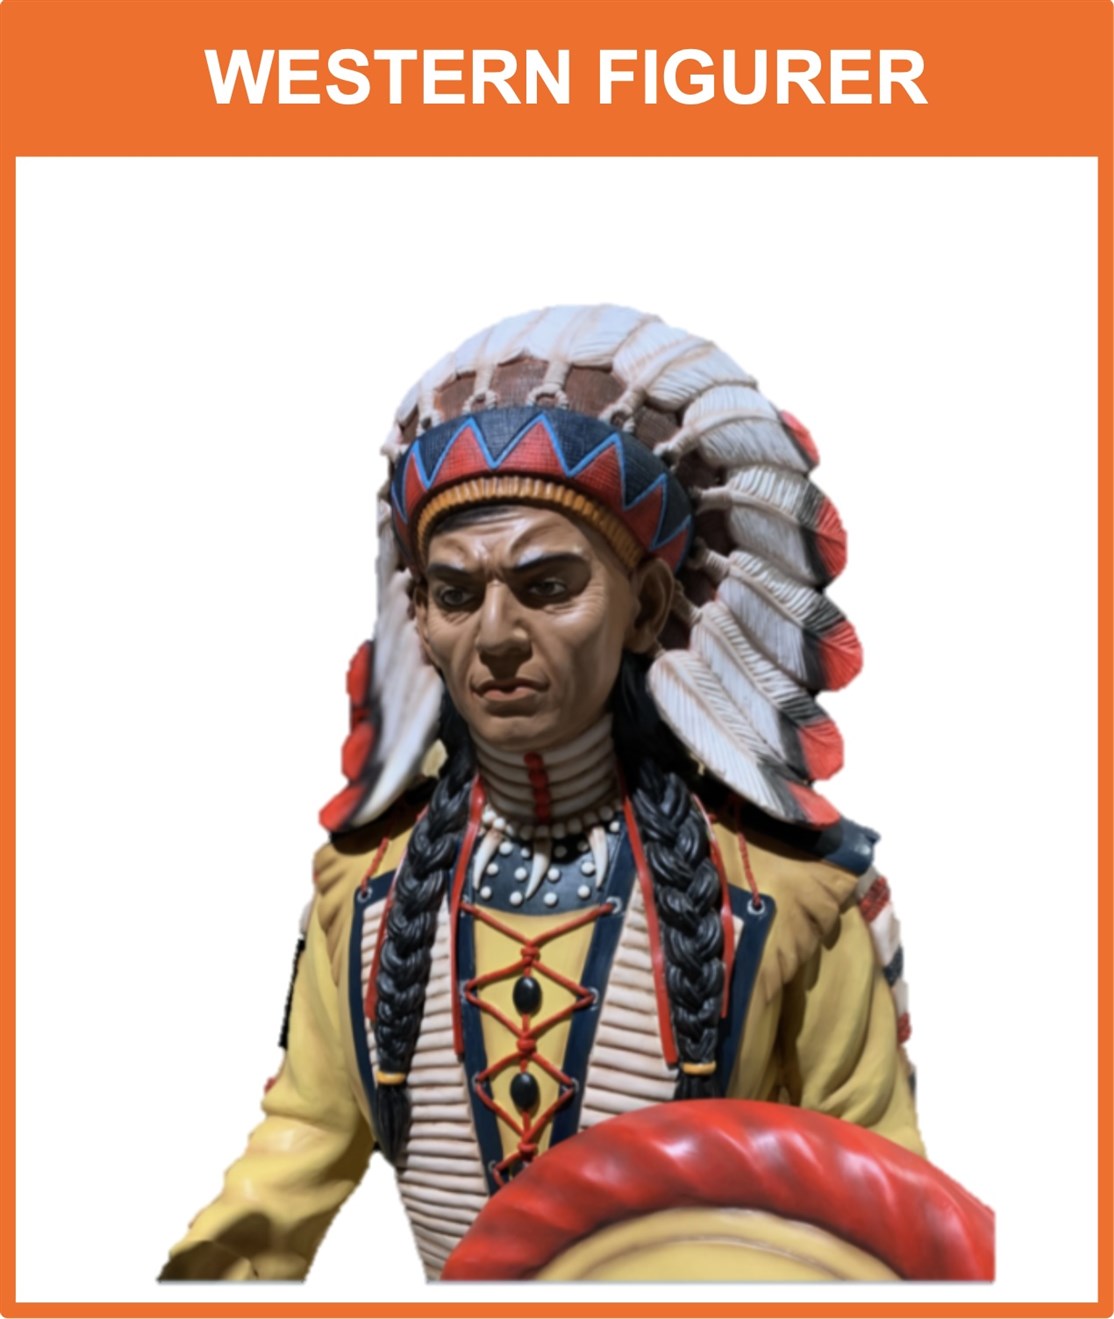 Køb eller lej cowboy og indianer figurer, produceret i glasfiber som kan stå ude og inde
*